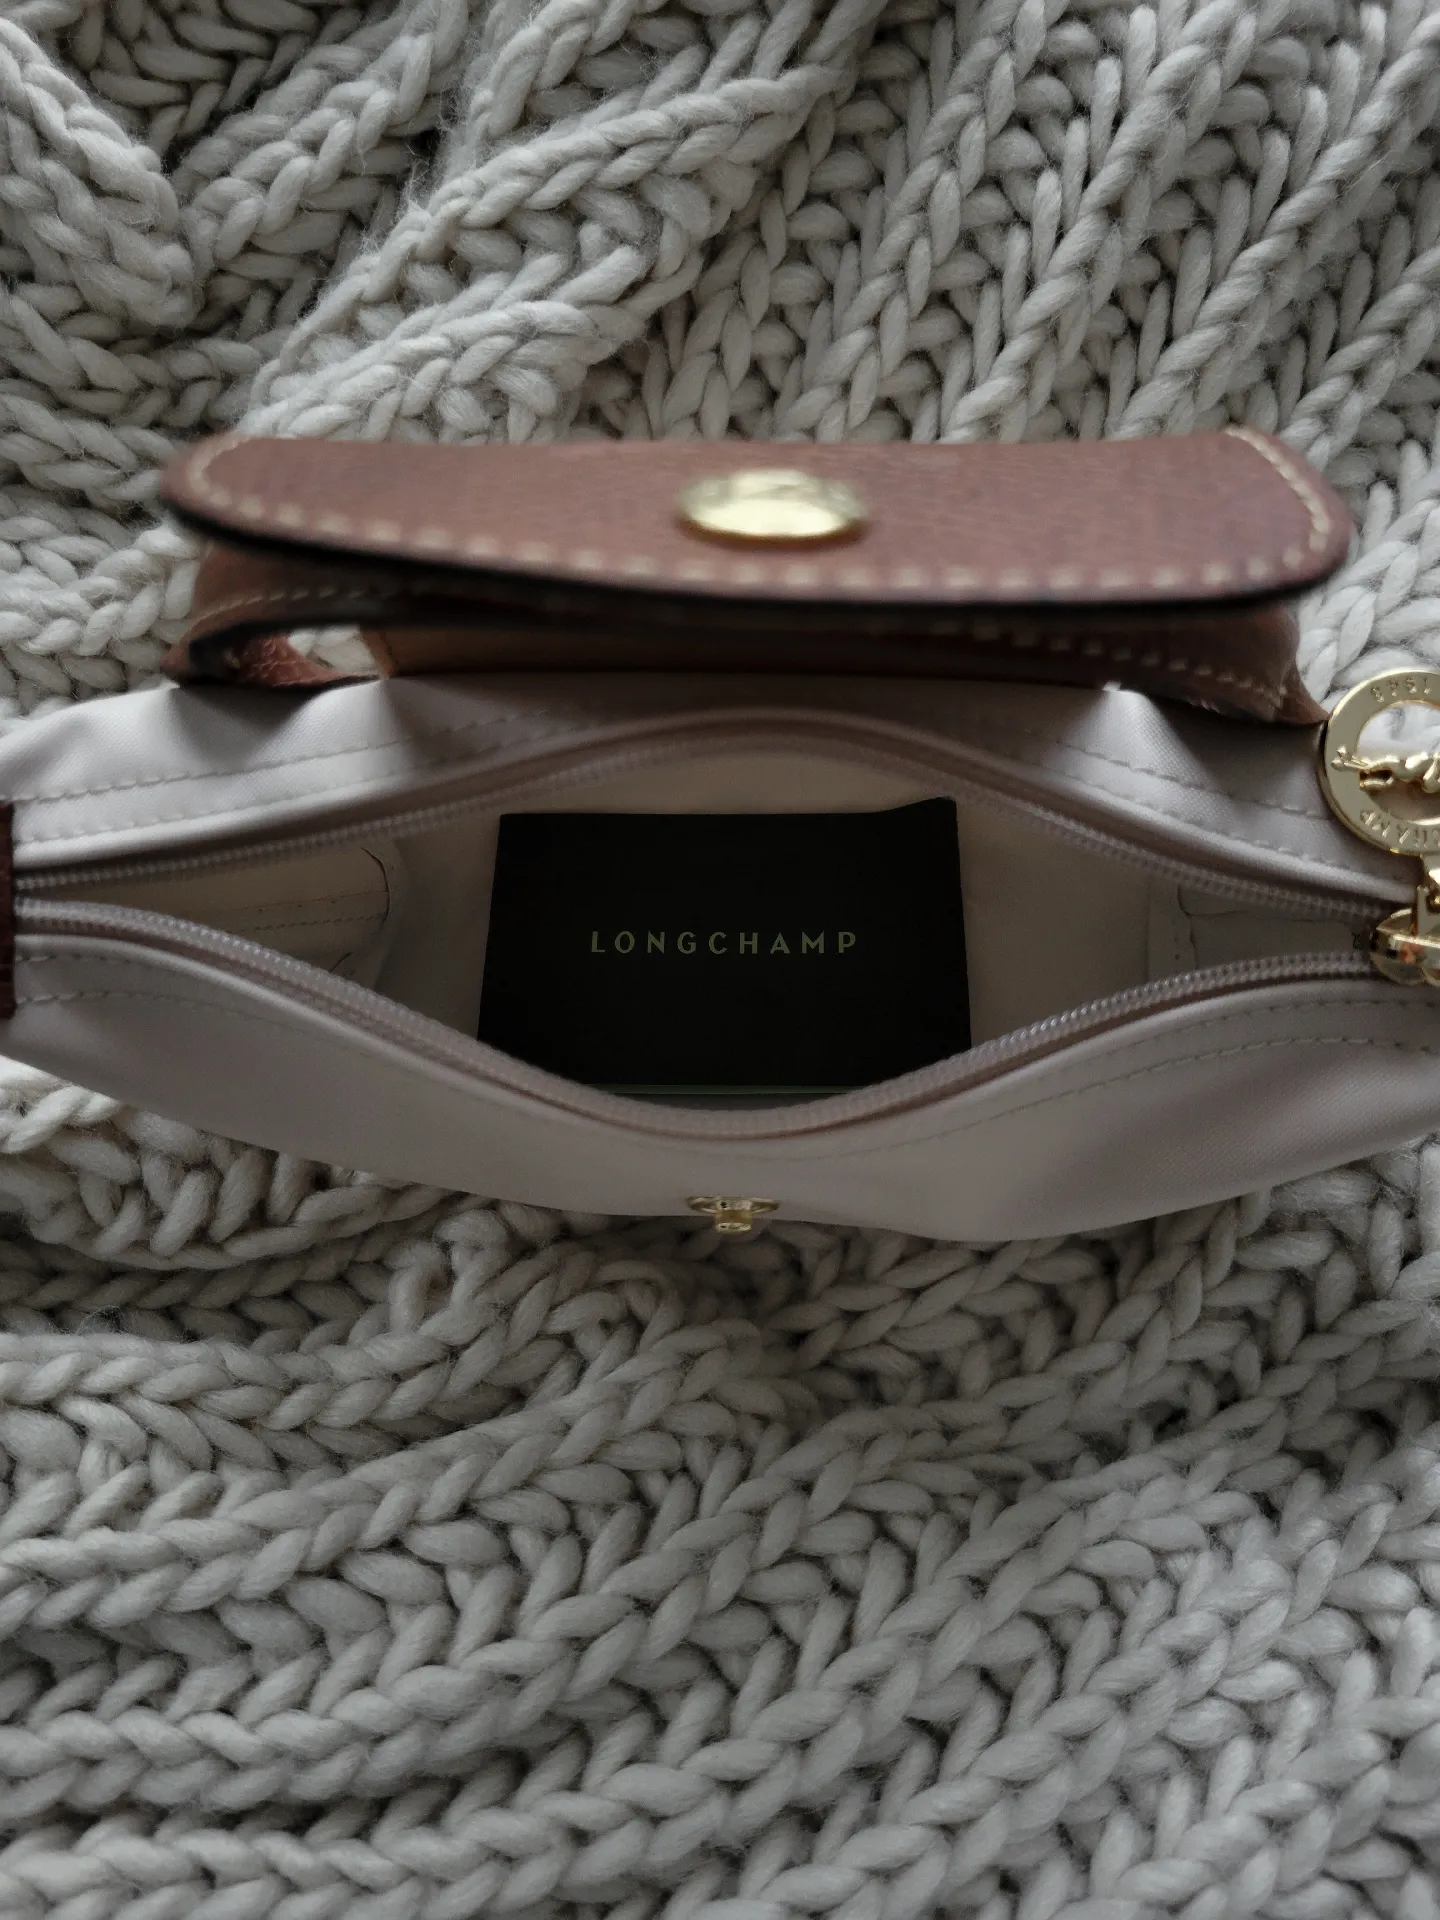 Unboxing Longchamp Le Pliage mini pouch Aesthetic